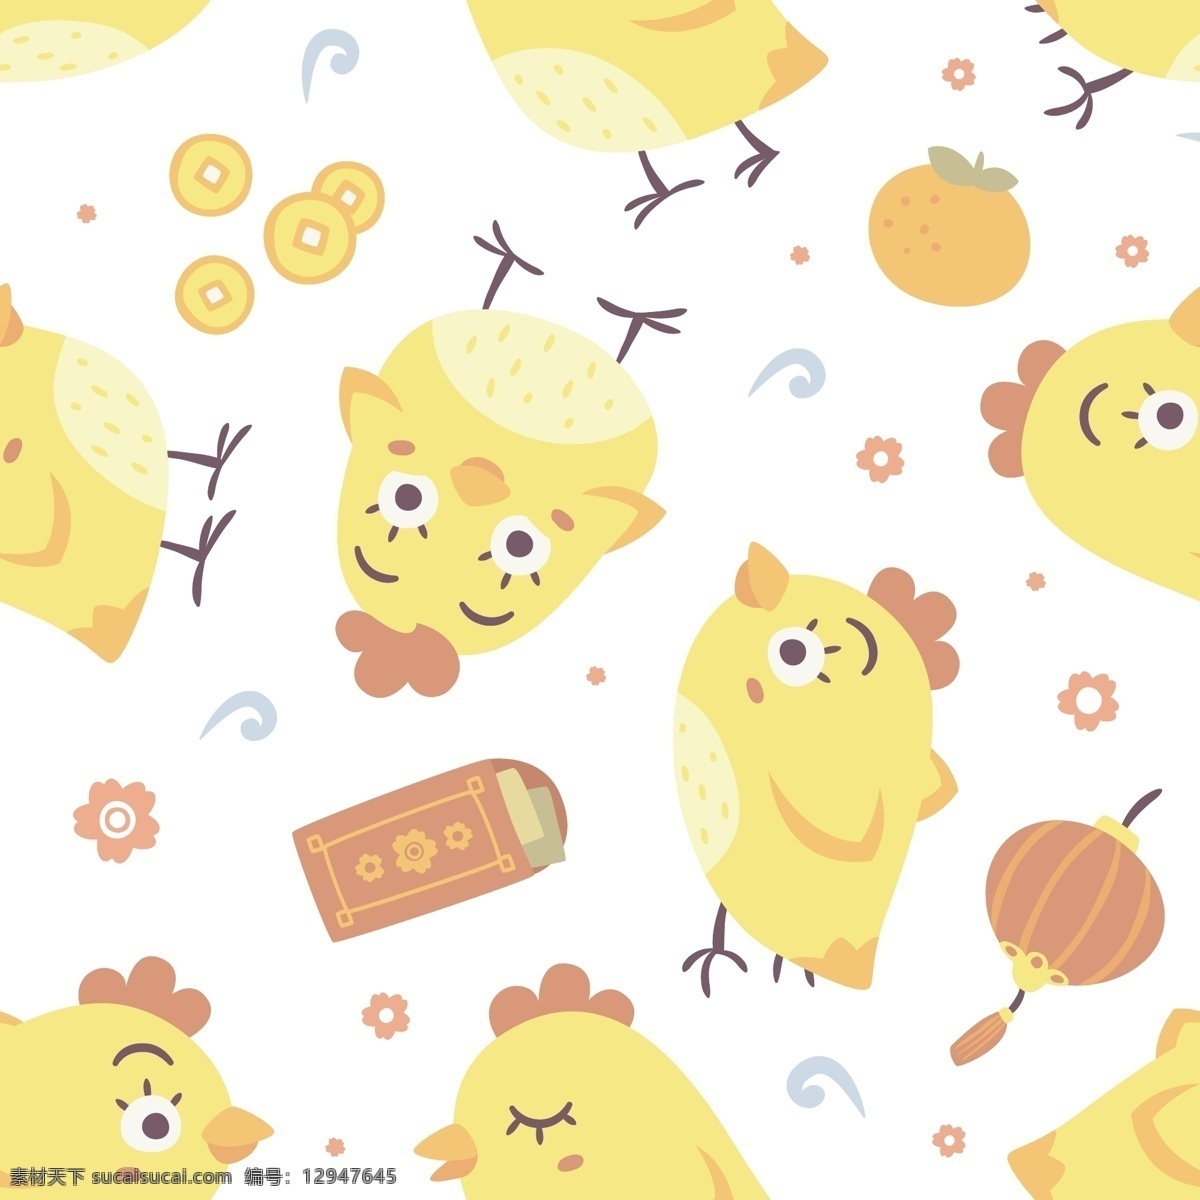 卡通 鸡年 q 版 小鸡 仔 填充 背景 黄色小鸡 扁平化素材 矢量素材 卡通背景 卡通鸡 母鸡 小黄鸡 鸡 十二生肖